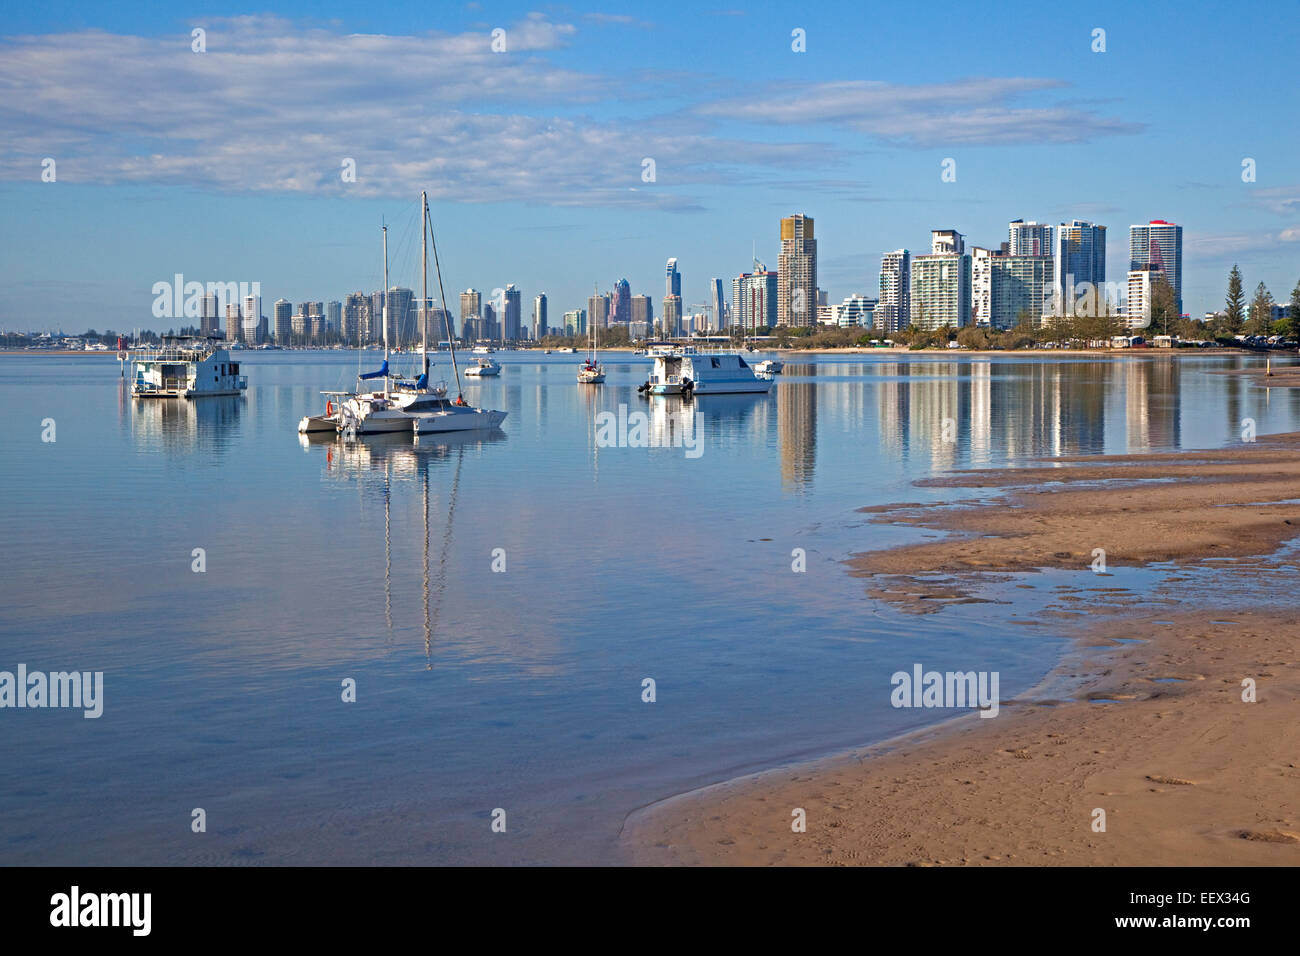 Lo skyline di Surfers Paradise mostra grattacieli, appartamenti e highrise caseggiati, Queensland, Australia Foto Stock